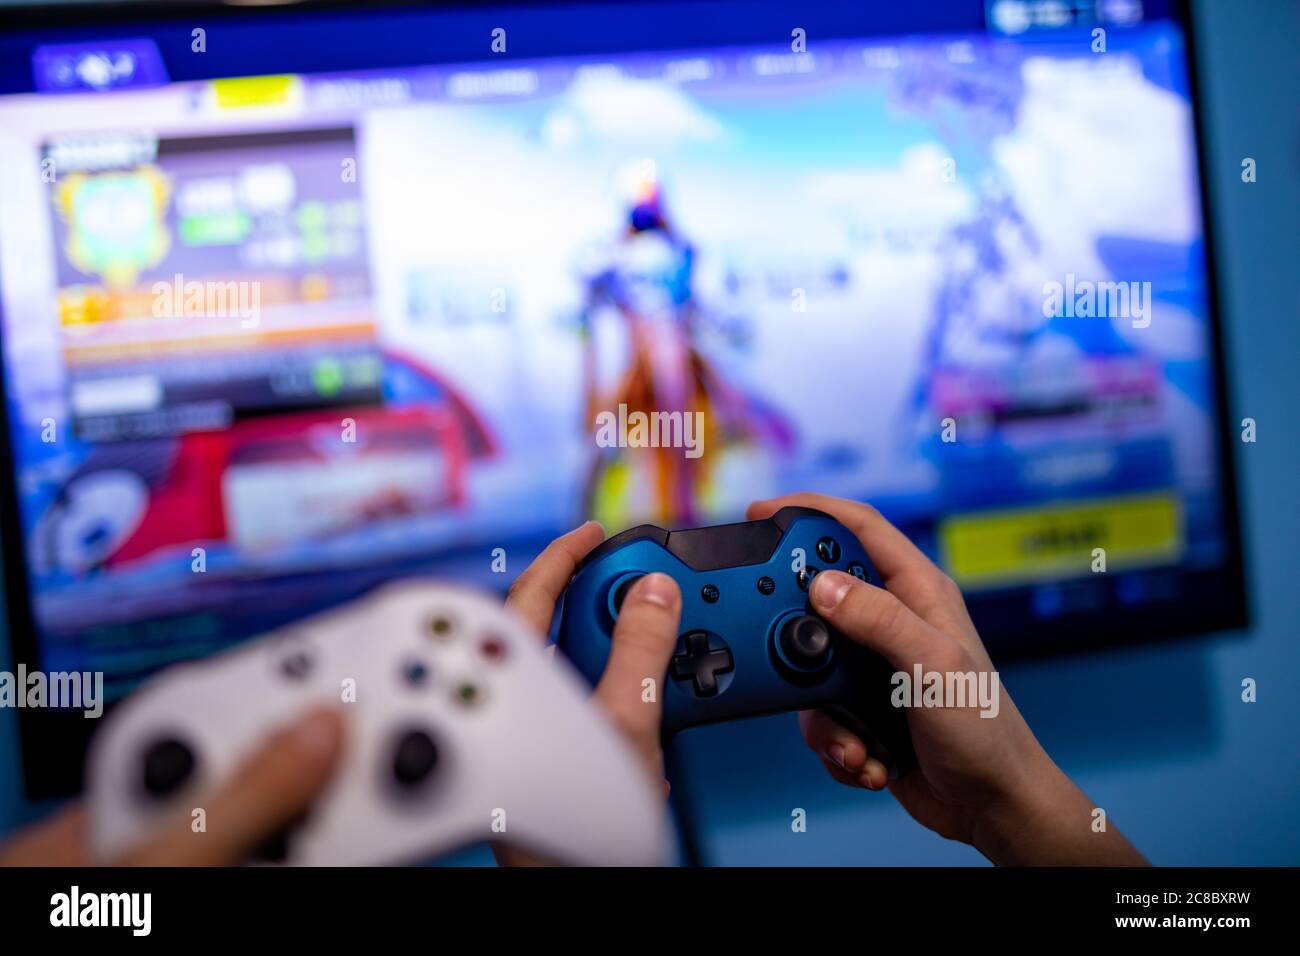 Foto de Microsoft Console De Jogos Xbox 360 e mais fotos de stock de  Controle - Controle, Videogame, Comunicação - iStock